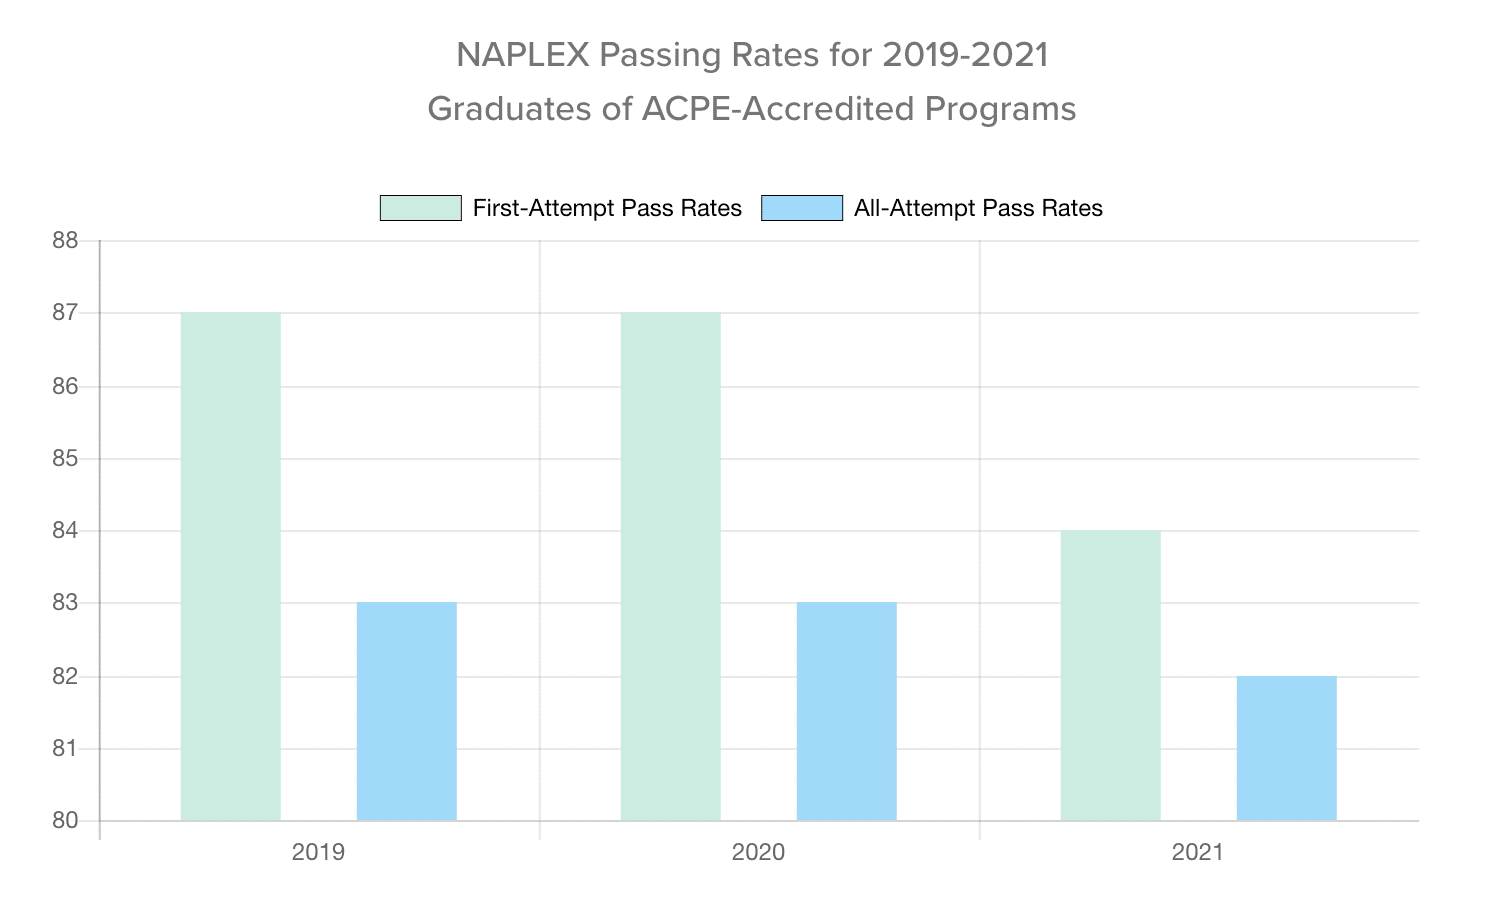 NAPLEX passing rates